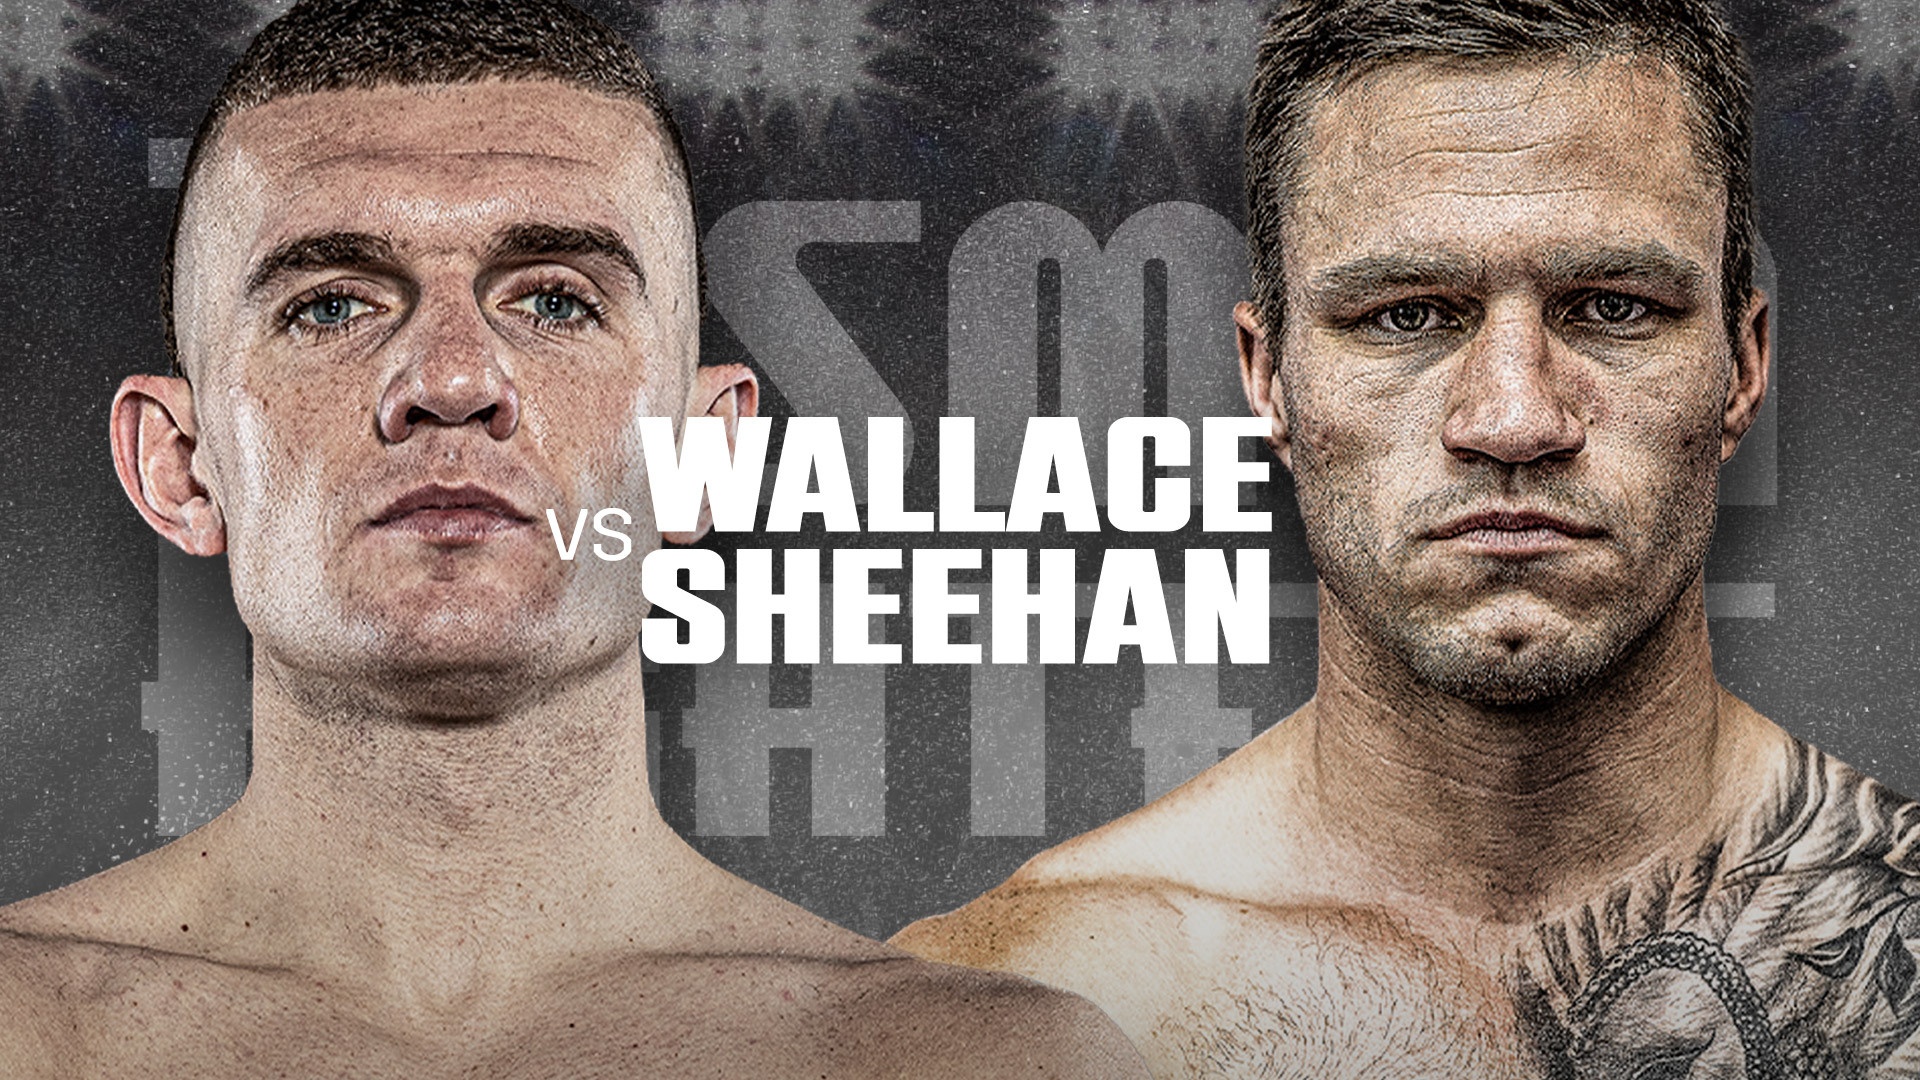 Wallace vs Sheehan